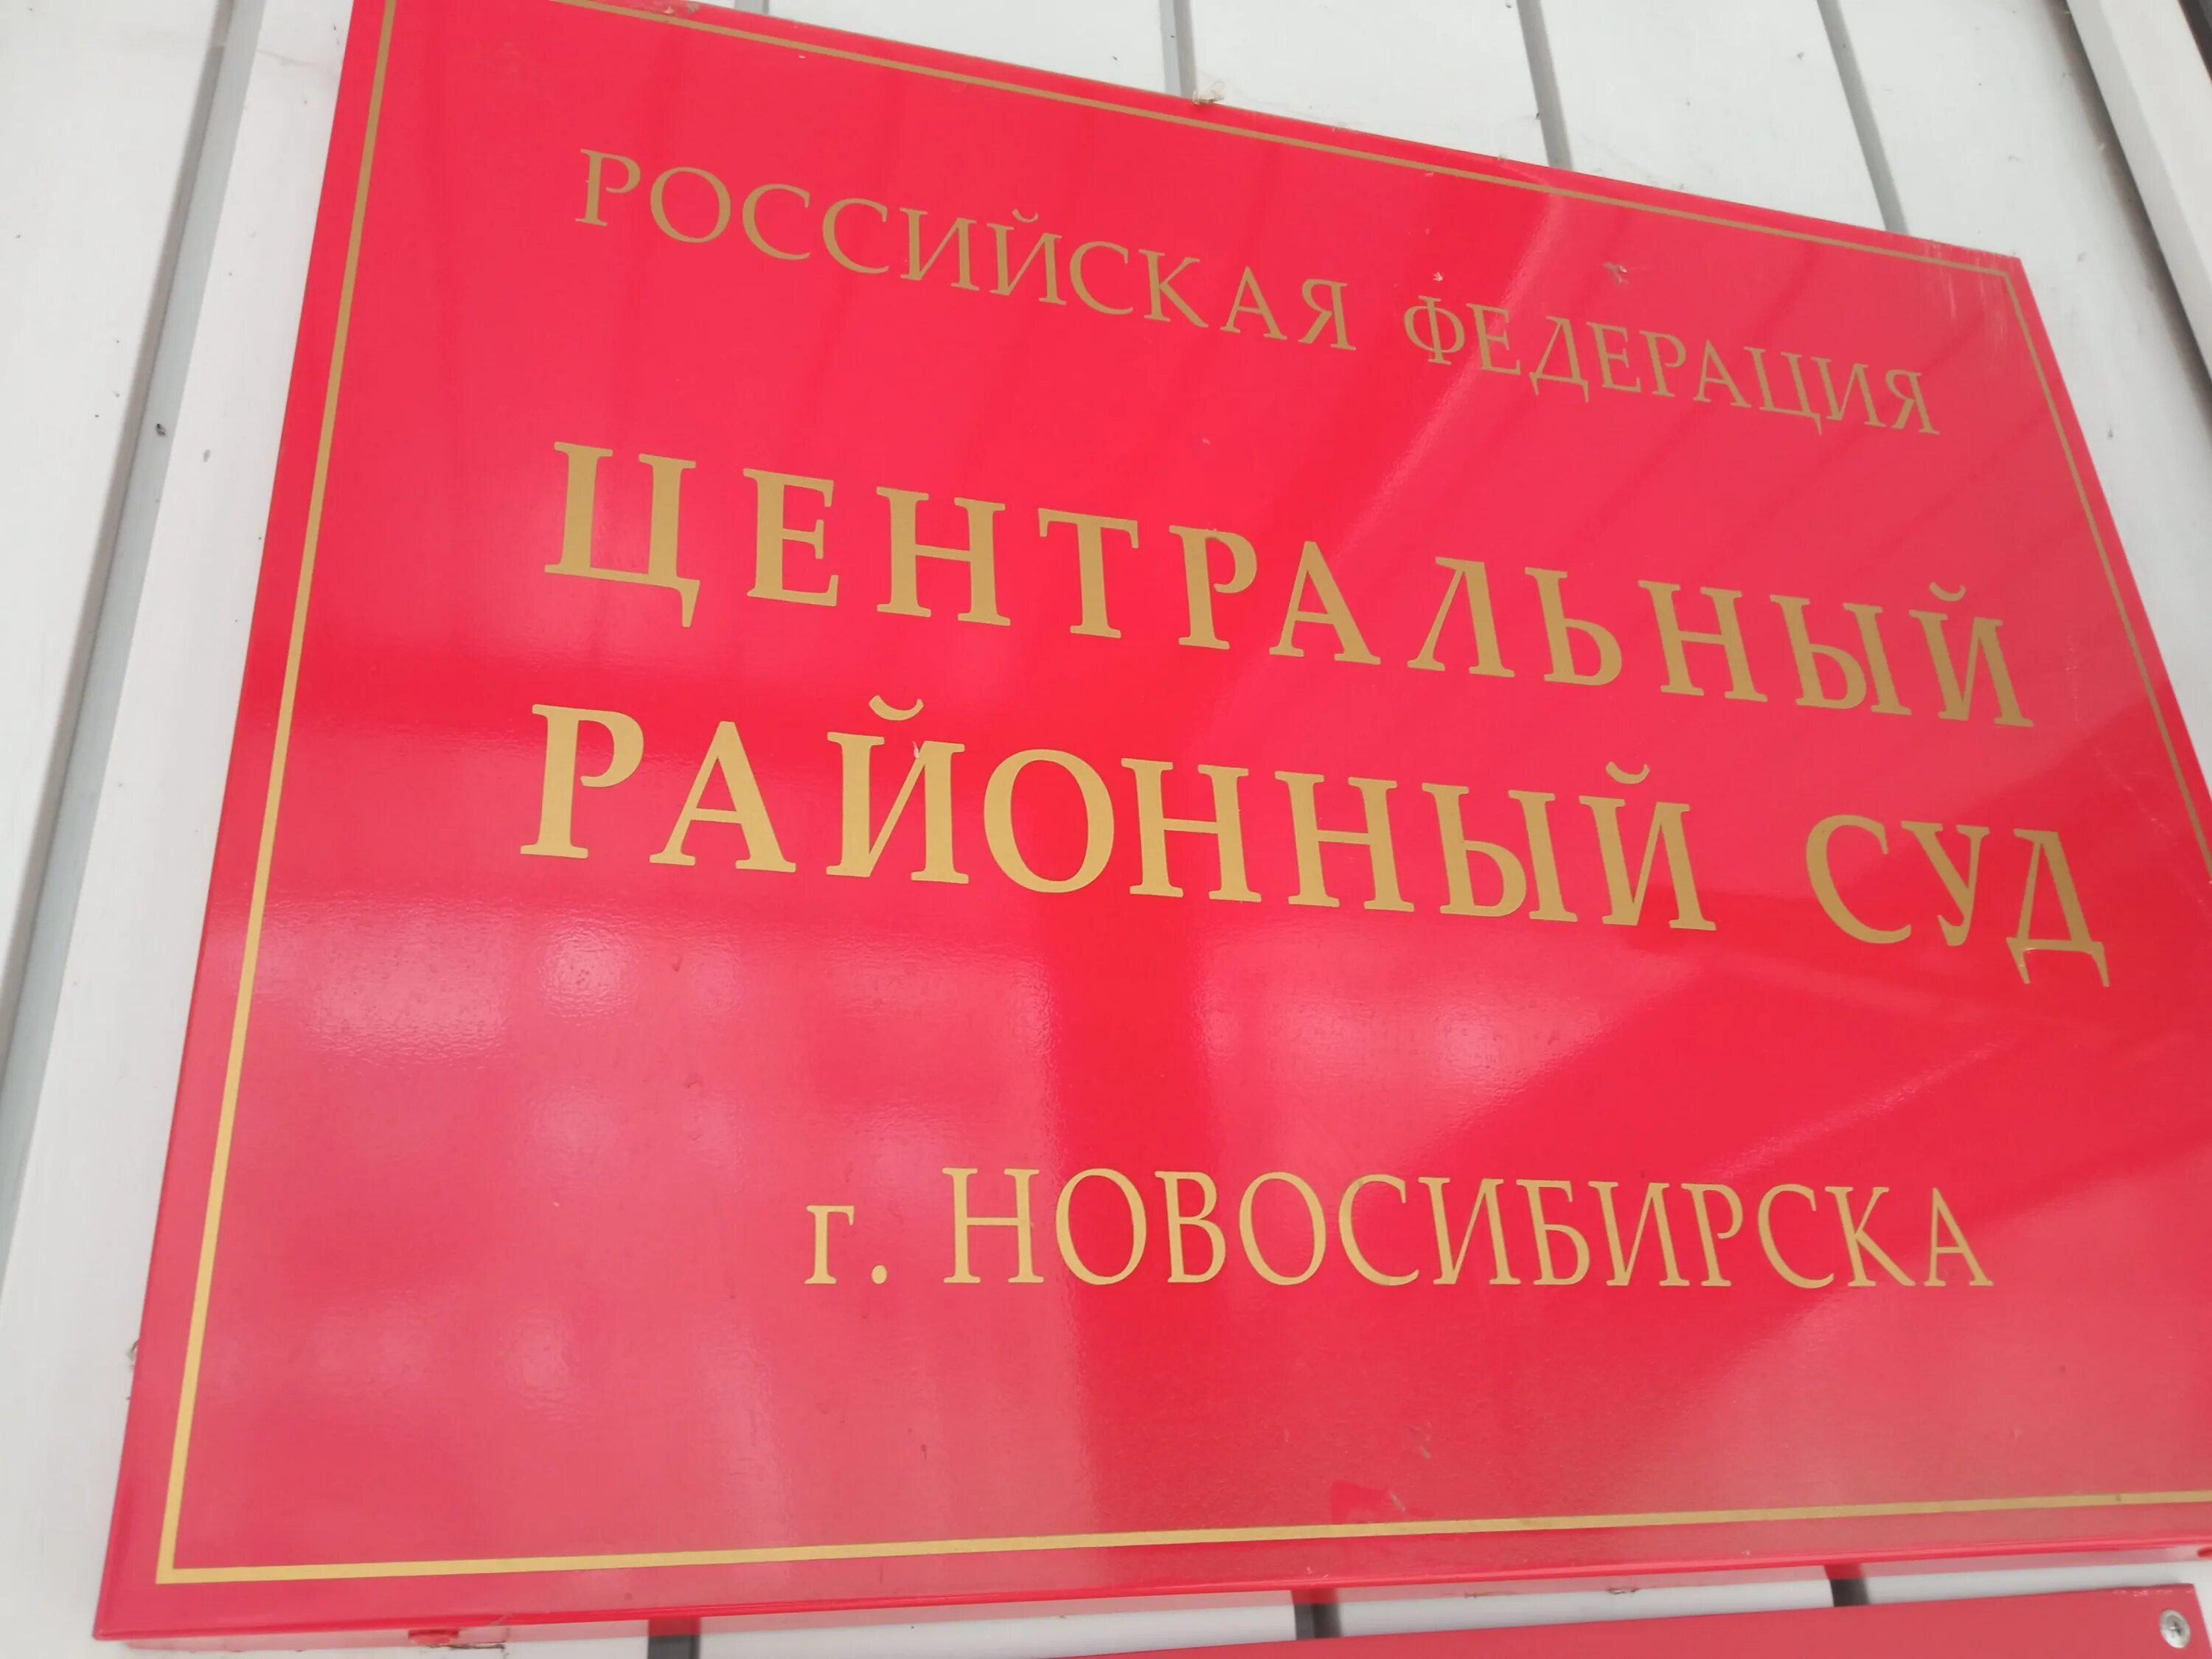 Ордынский районный суд новосибирской